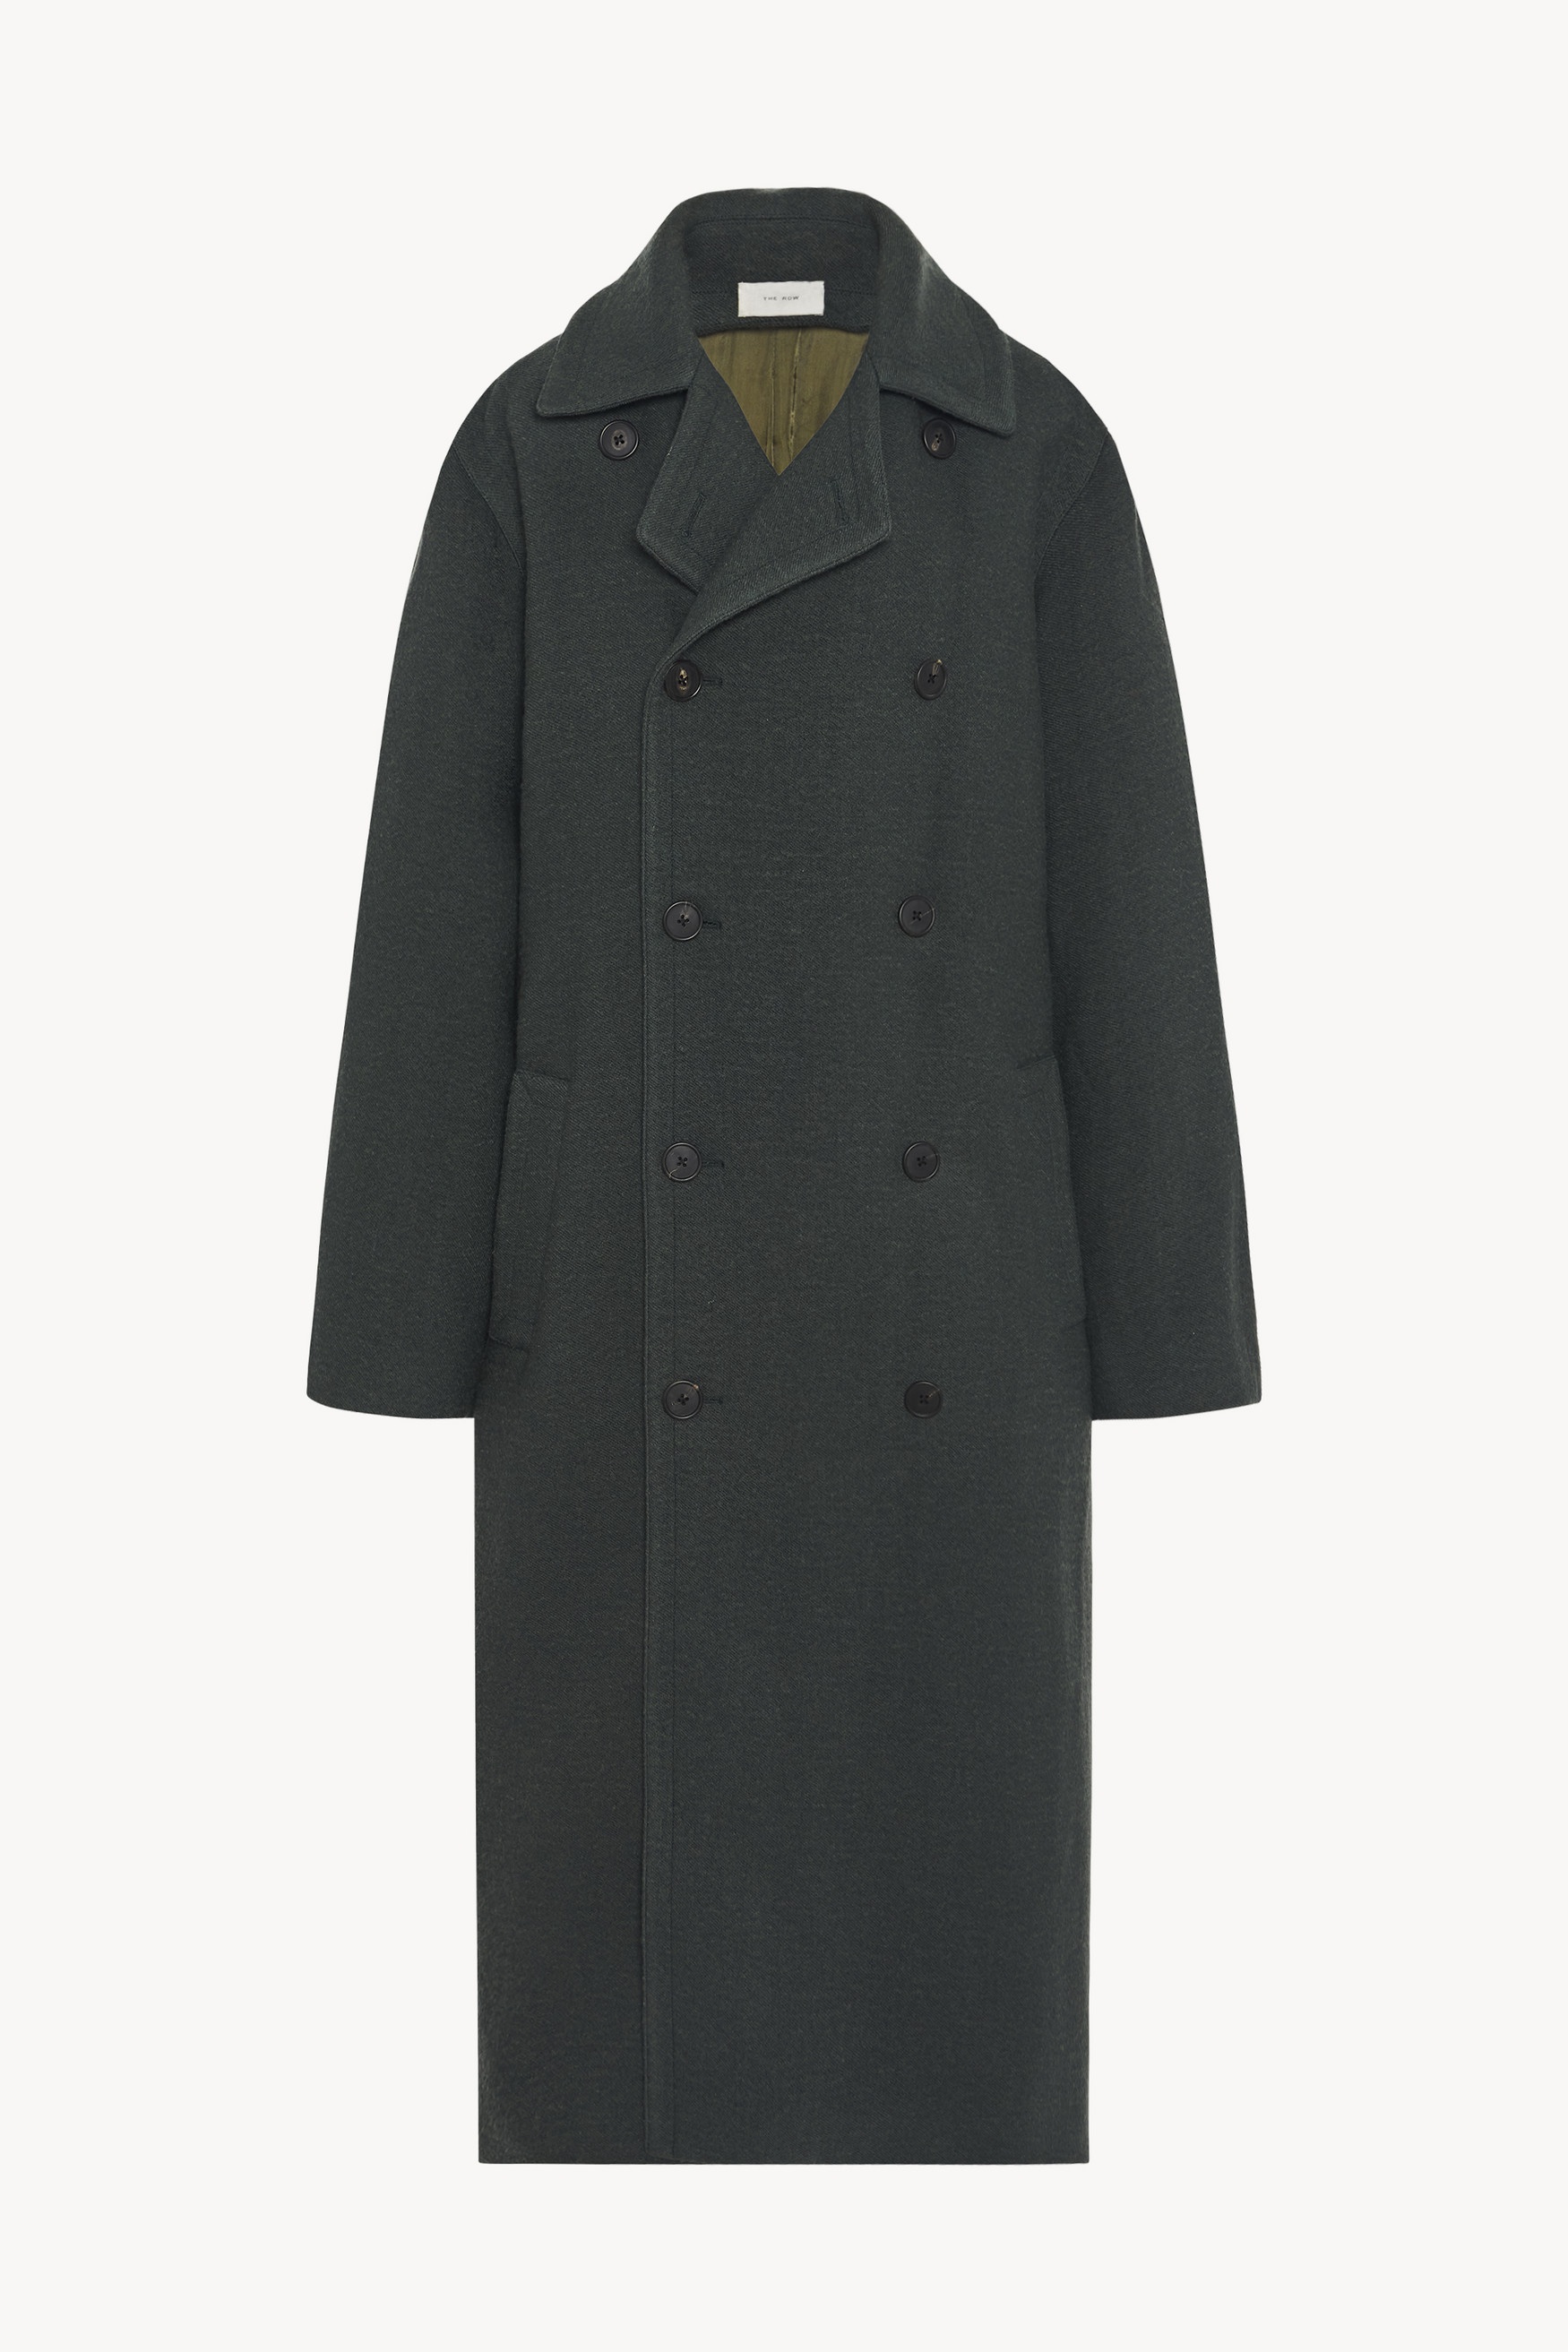 Beyzo Coat in Virgin Wool and Linen - 3